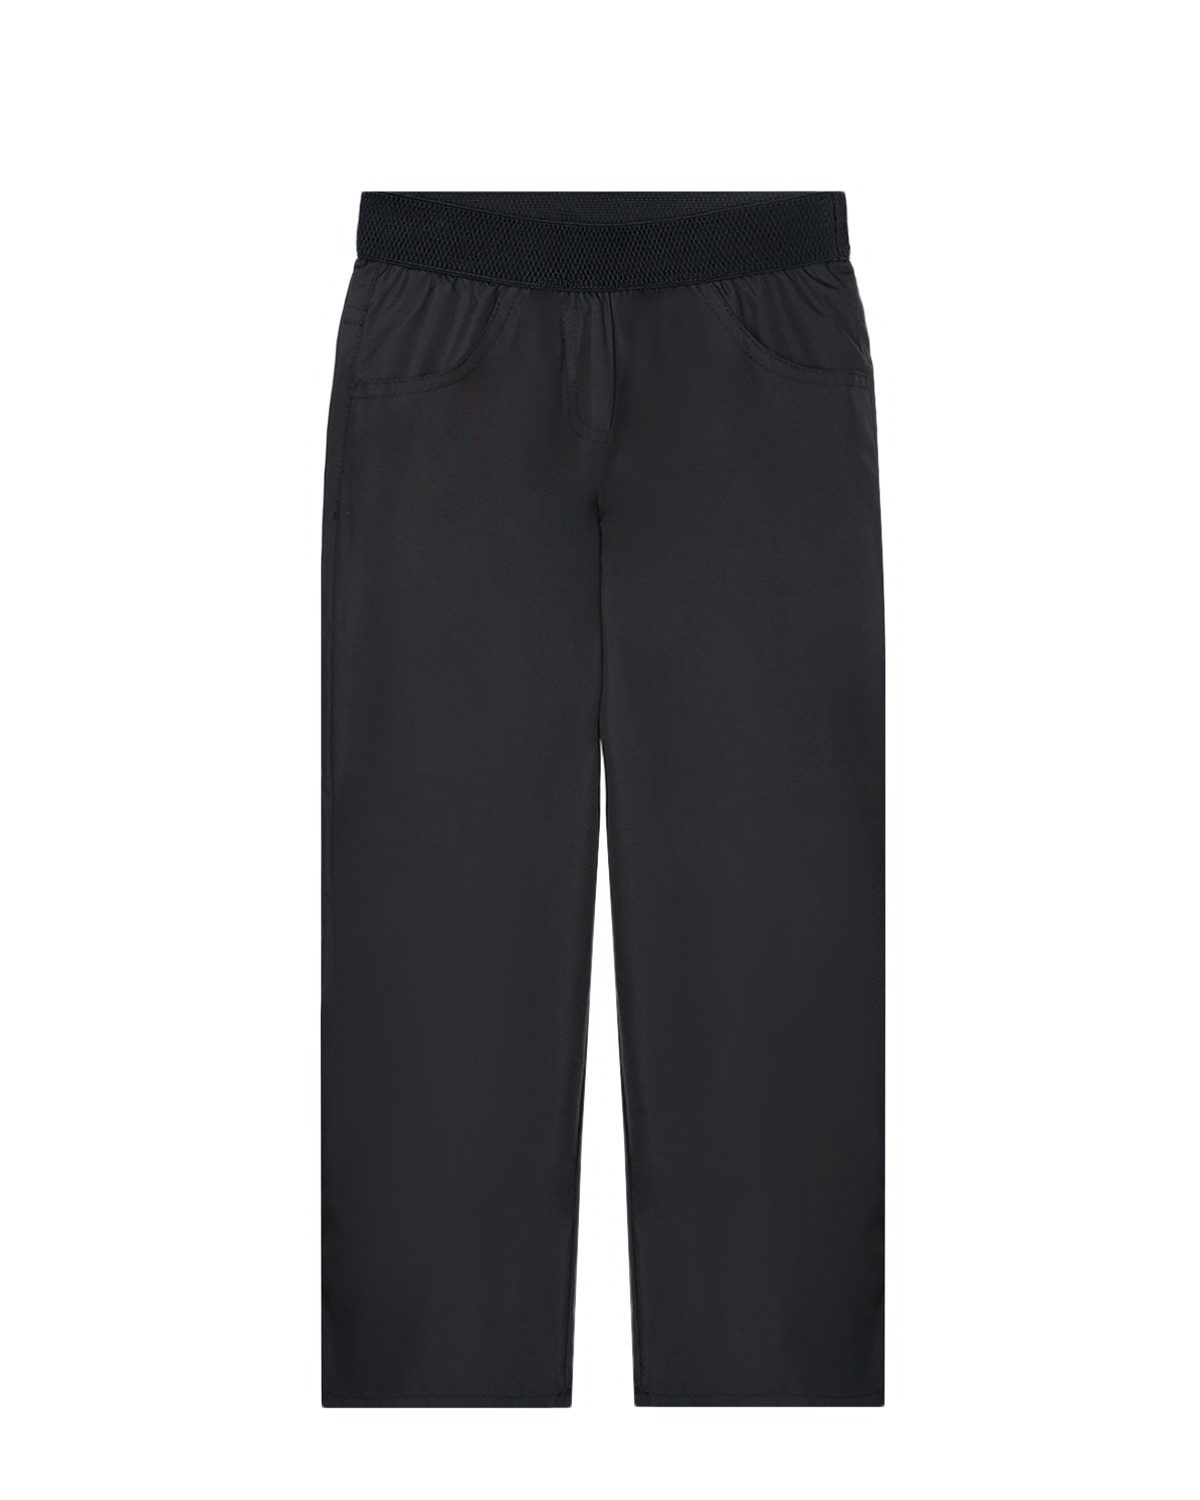 Черные болониевые брюки Dan Maralex детские, размер 104, цвет черный